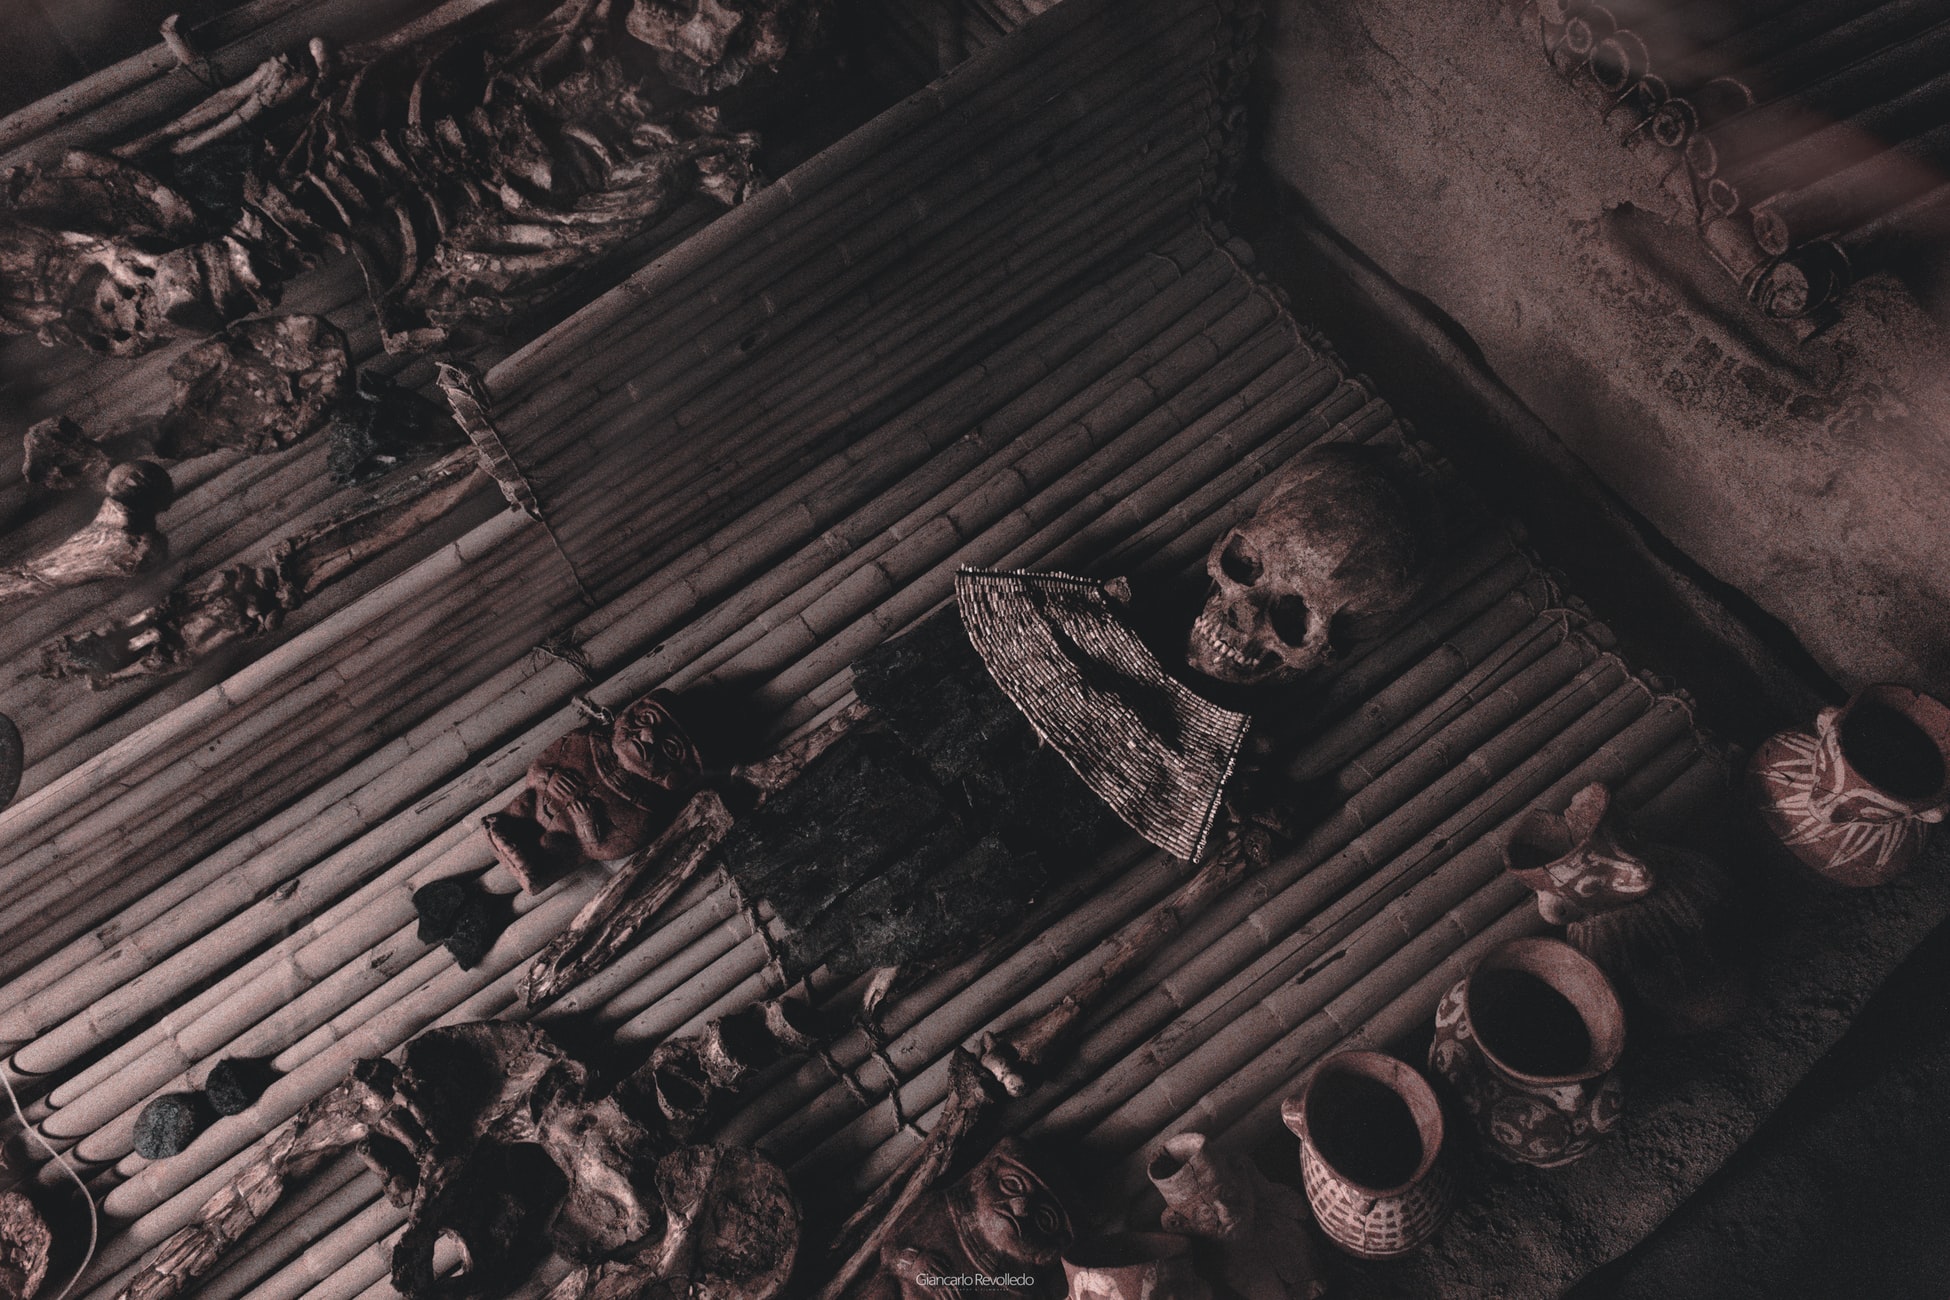 Site Museum Huaca Rajada - Sipan, Peru: Image of bones